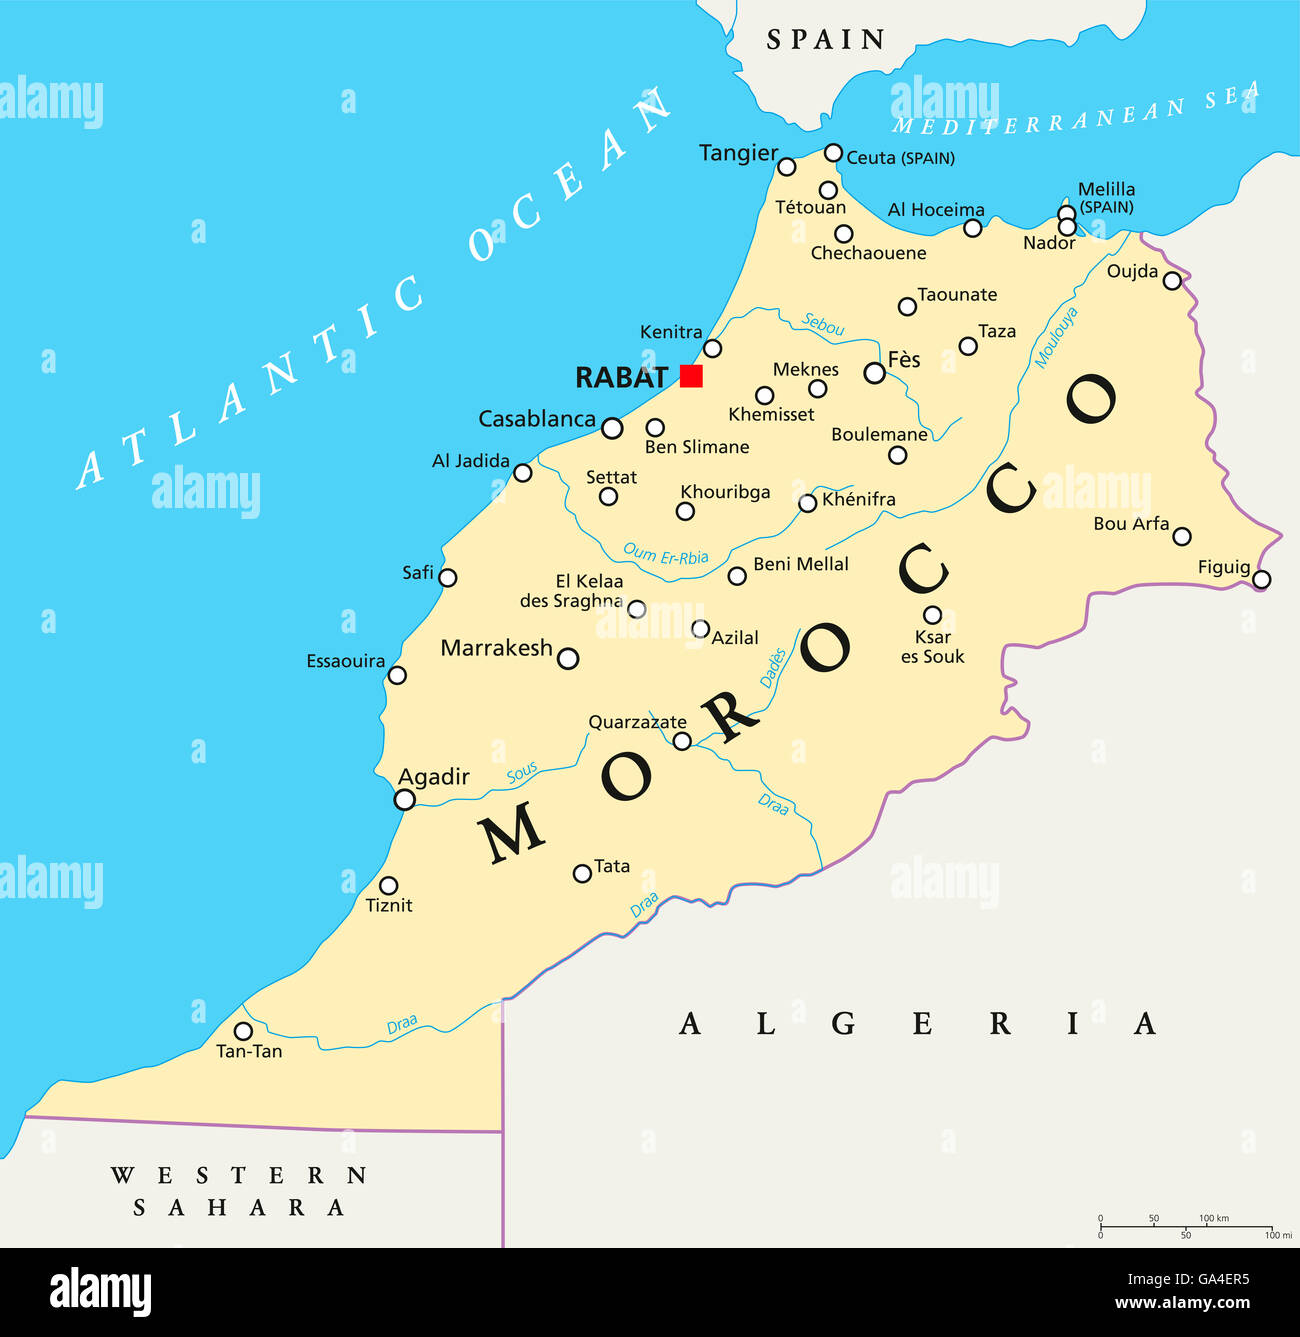 Carte du maroc Banque de photographies et d'images à haute résolution -  Alamy